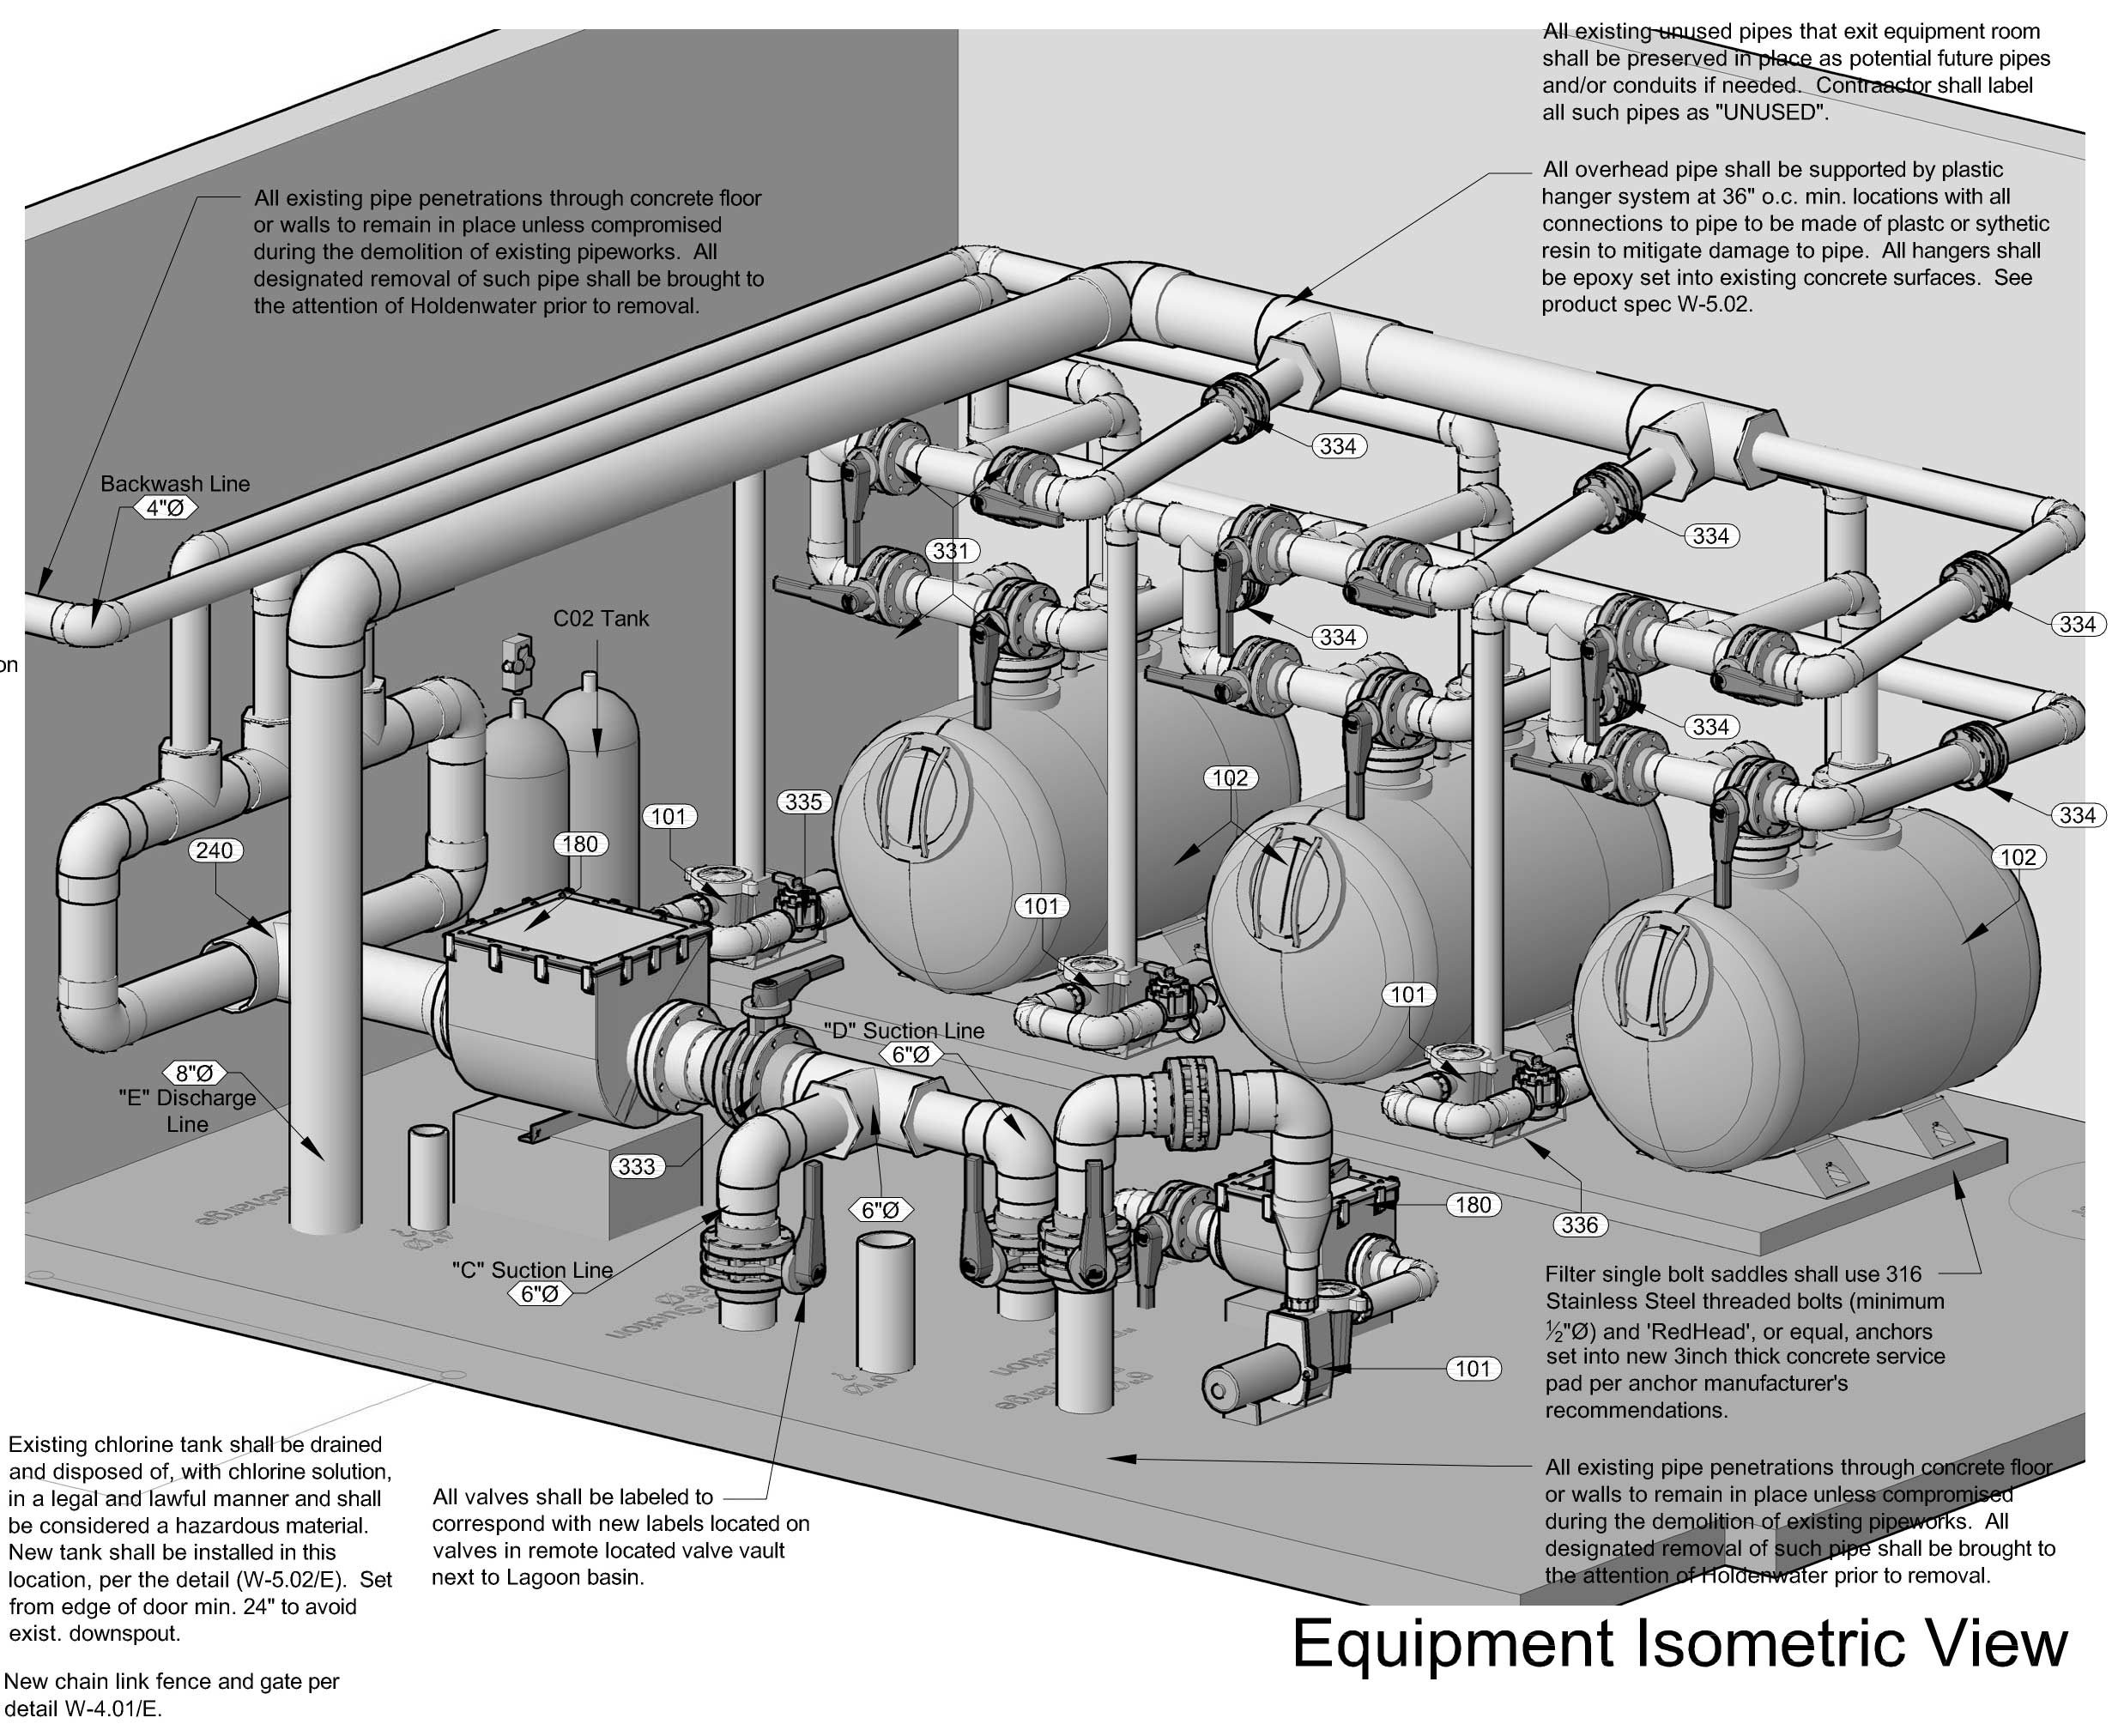 Isometric view of equipment